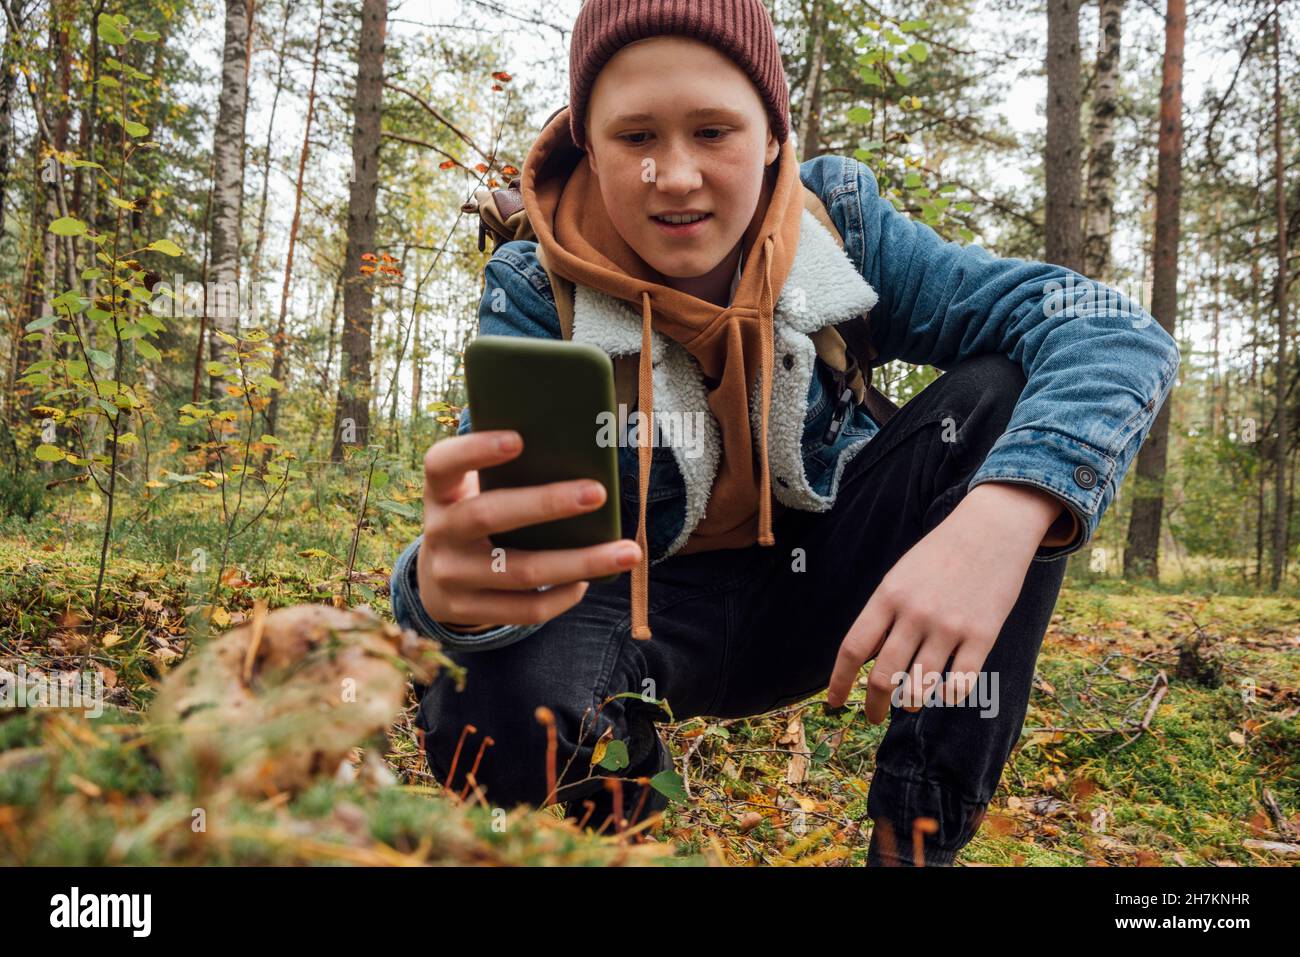 Junge fotografiert durch Smartphone, während er im Wald kniet Stockfoto